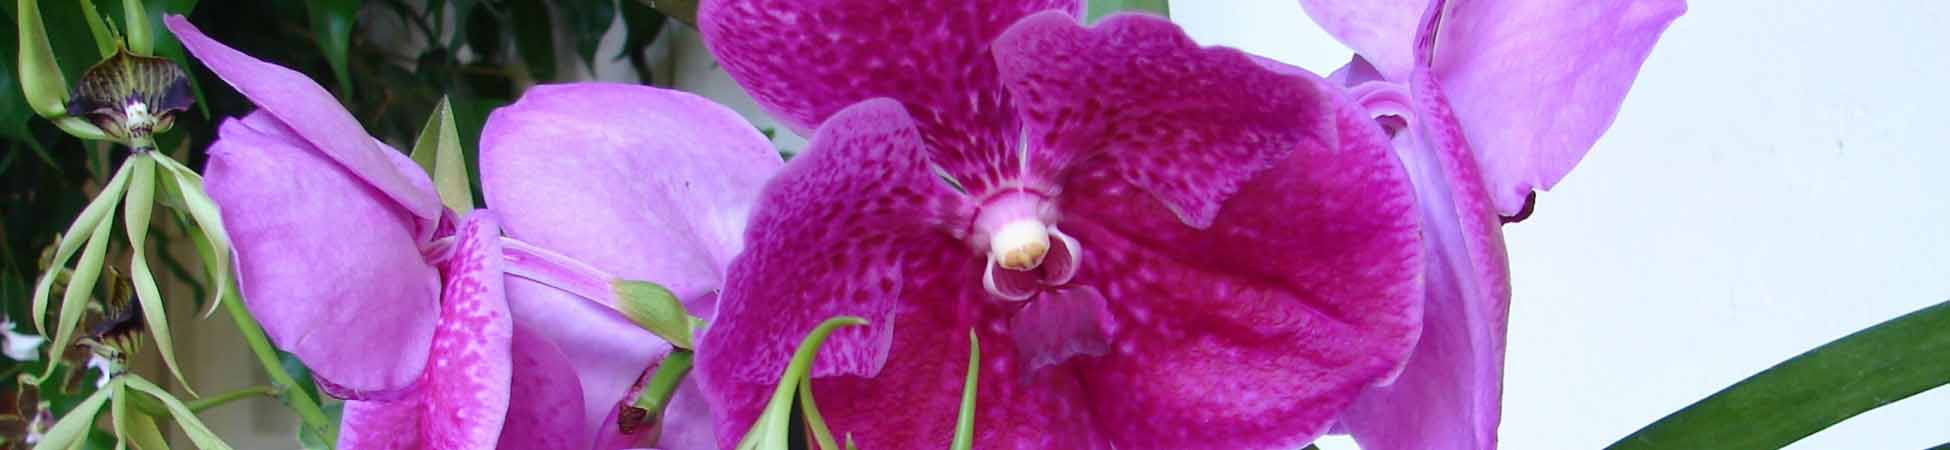 Orchidee Guatemala